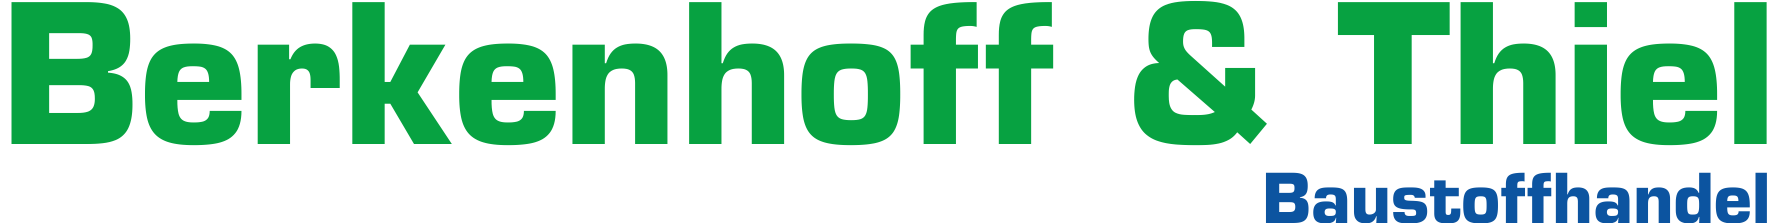 Berkenhoff & Thiel logo